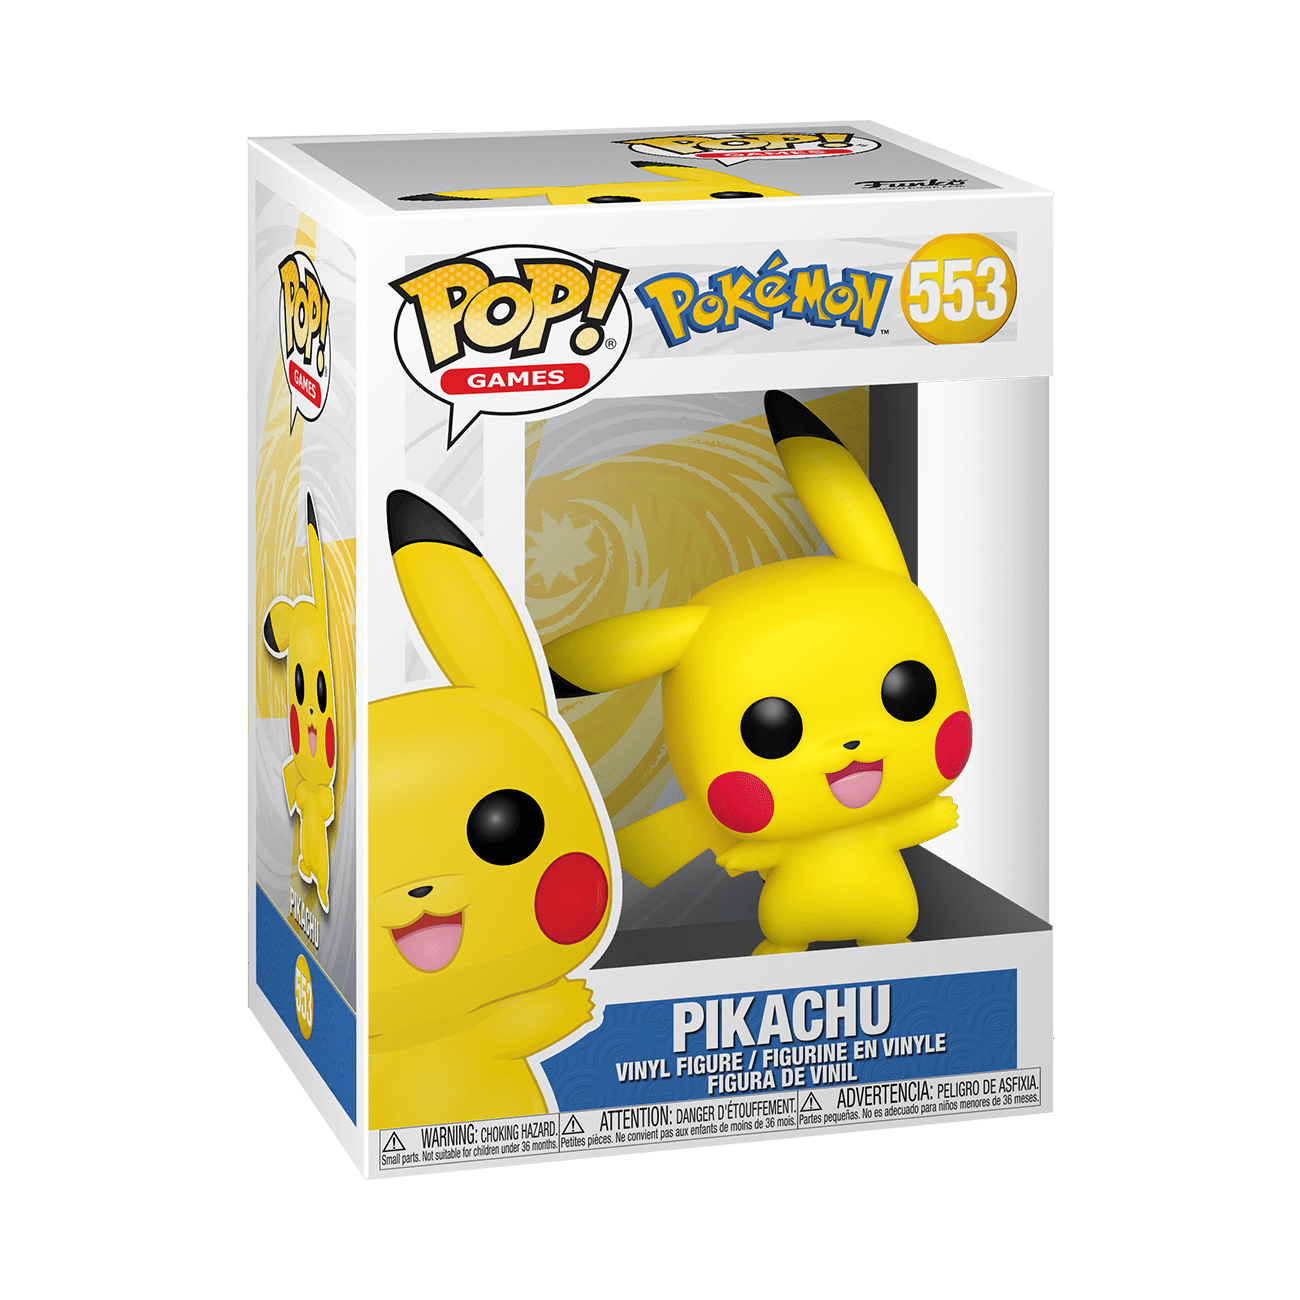 Pop Games: Pokémon - Pikachu (waving)